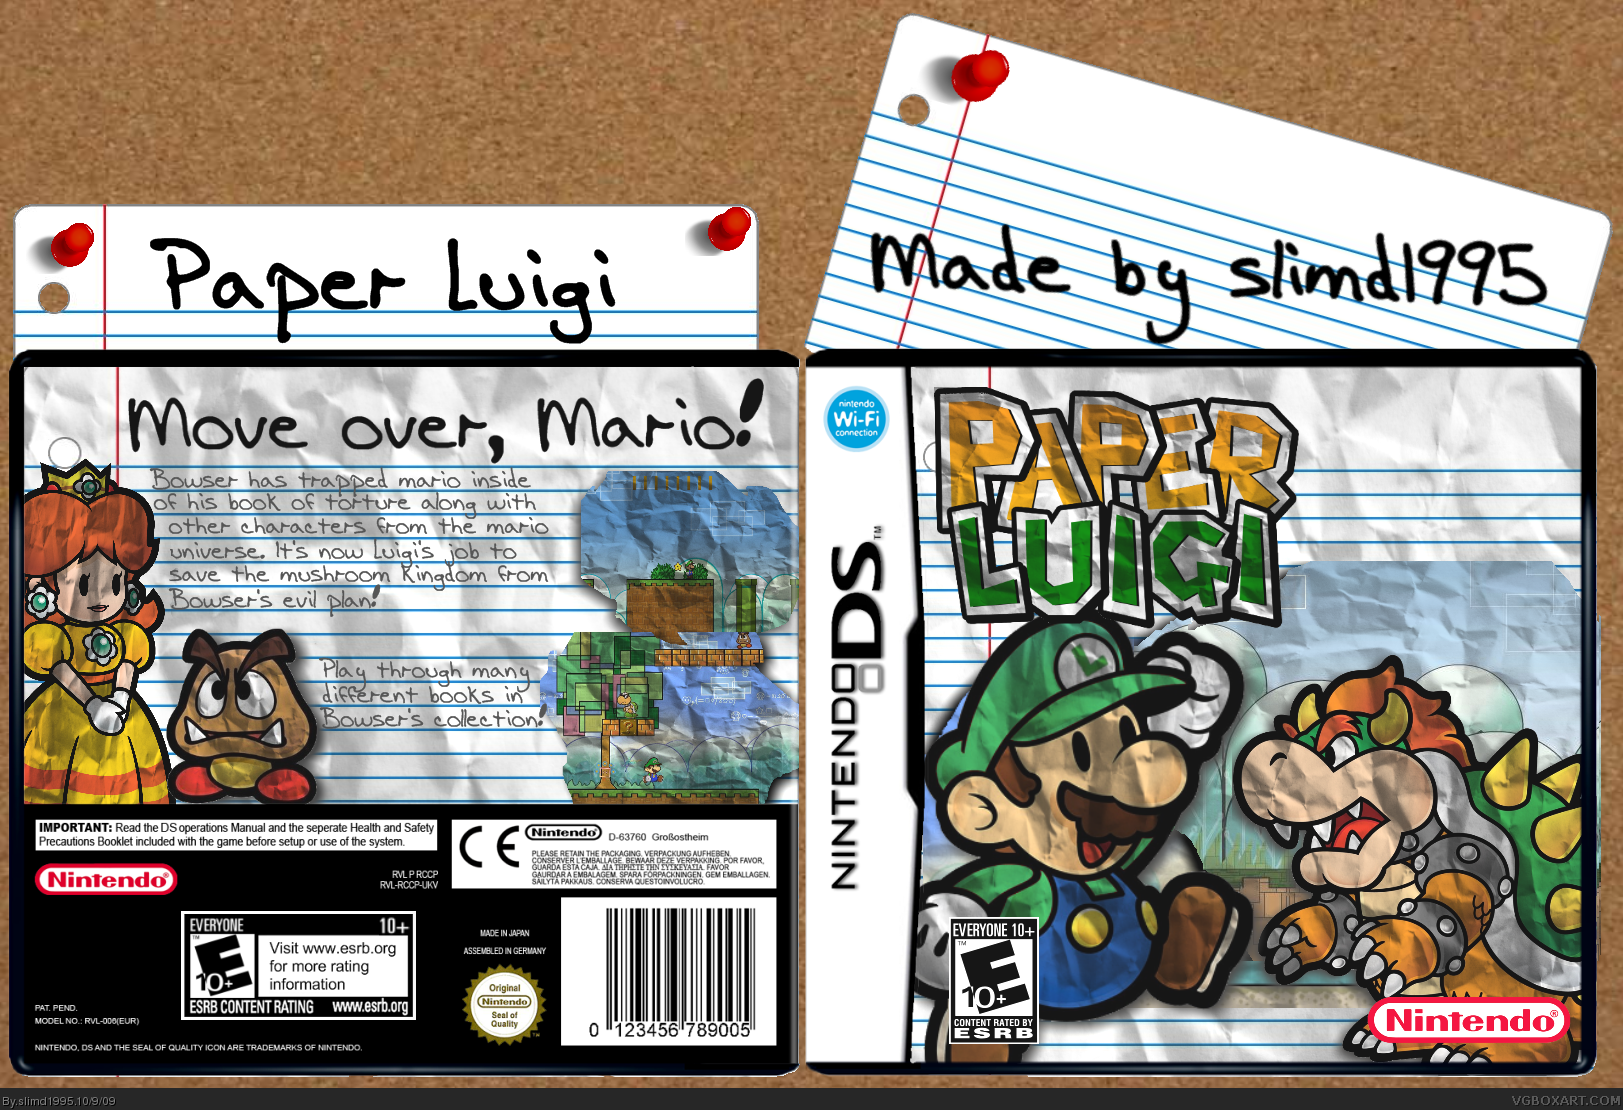 Paper Luigi box cover